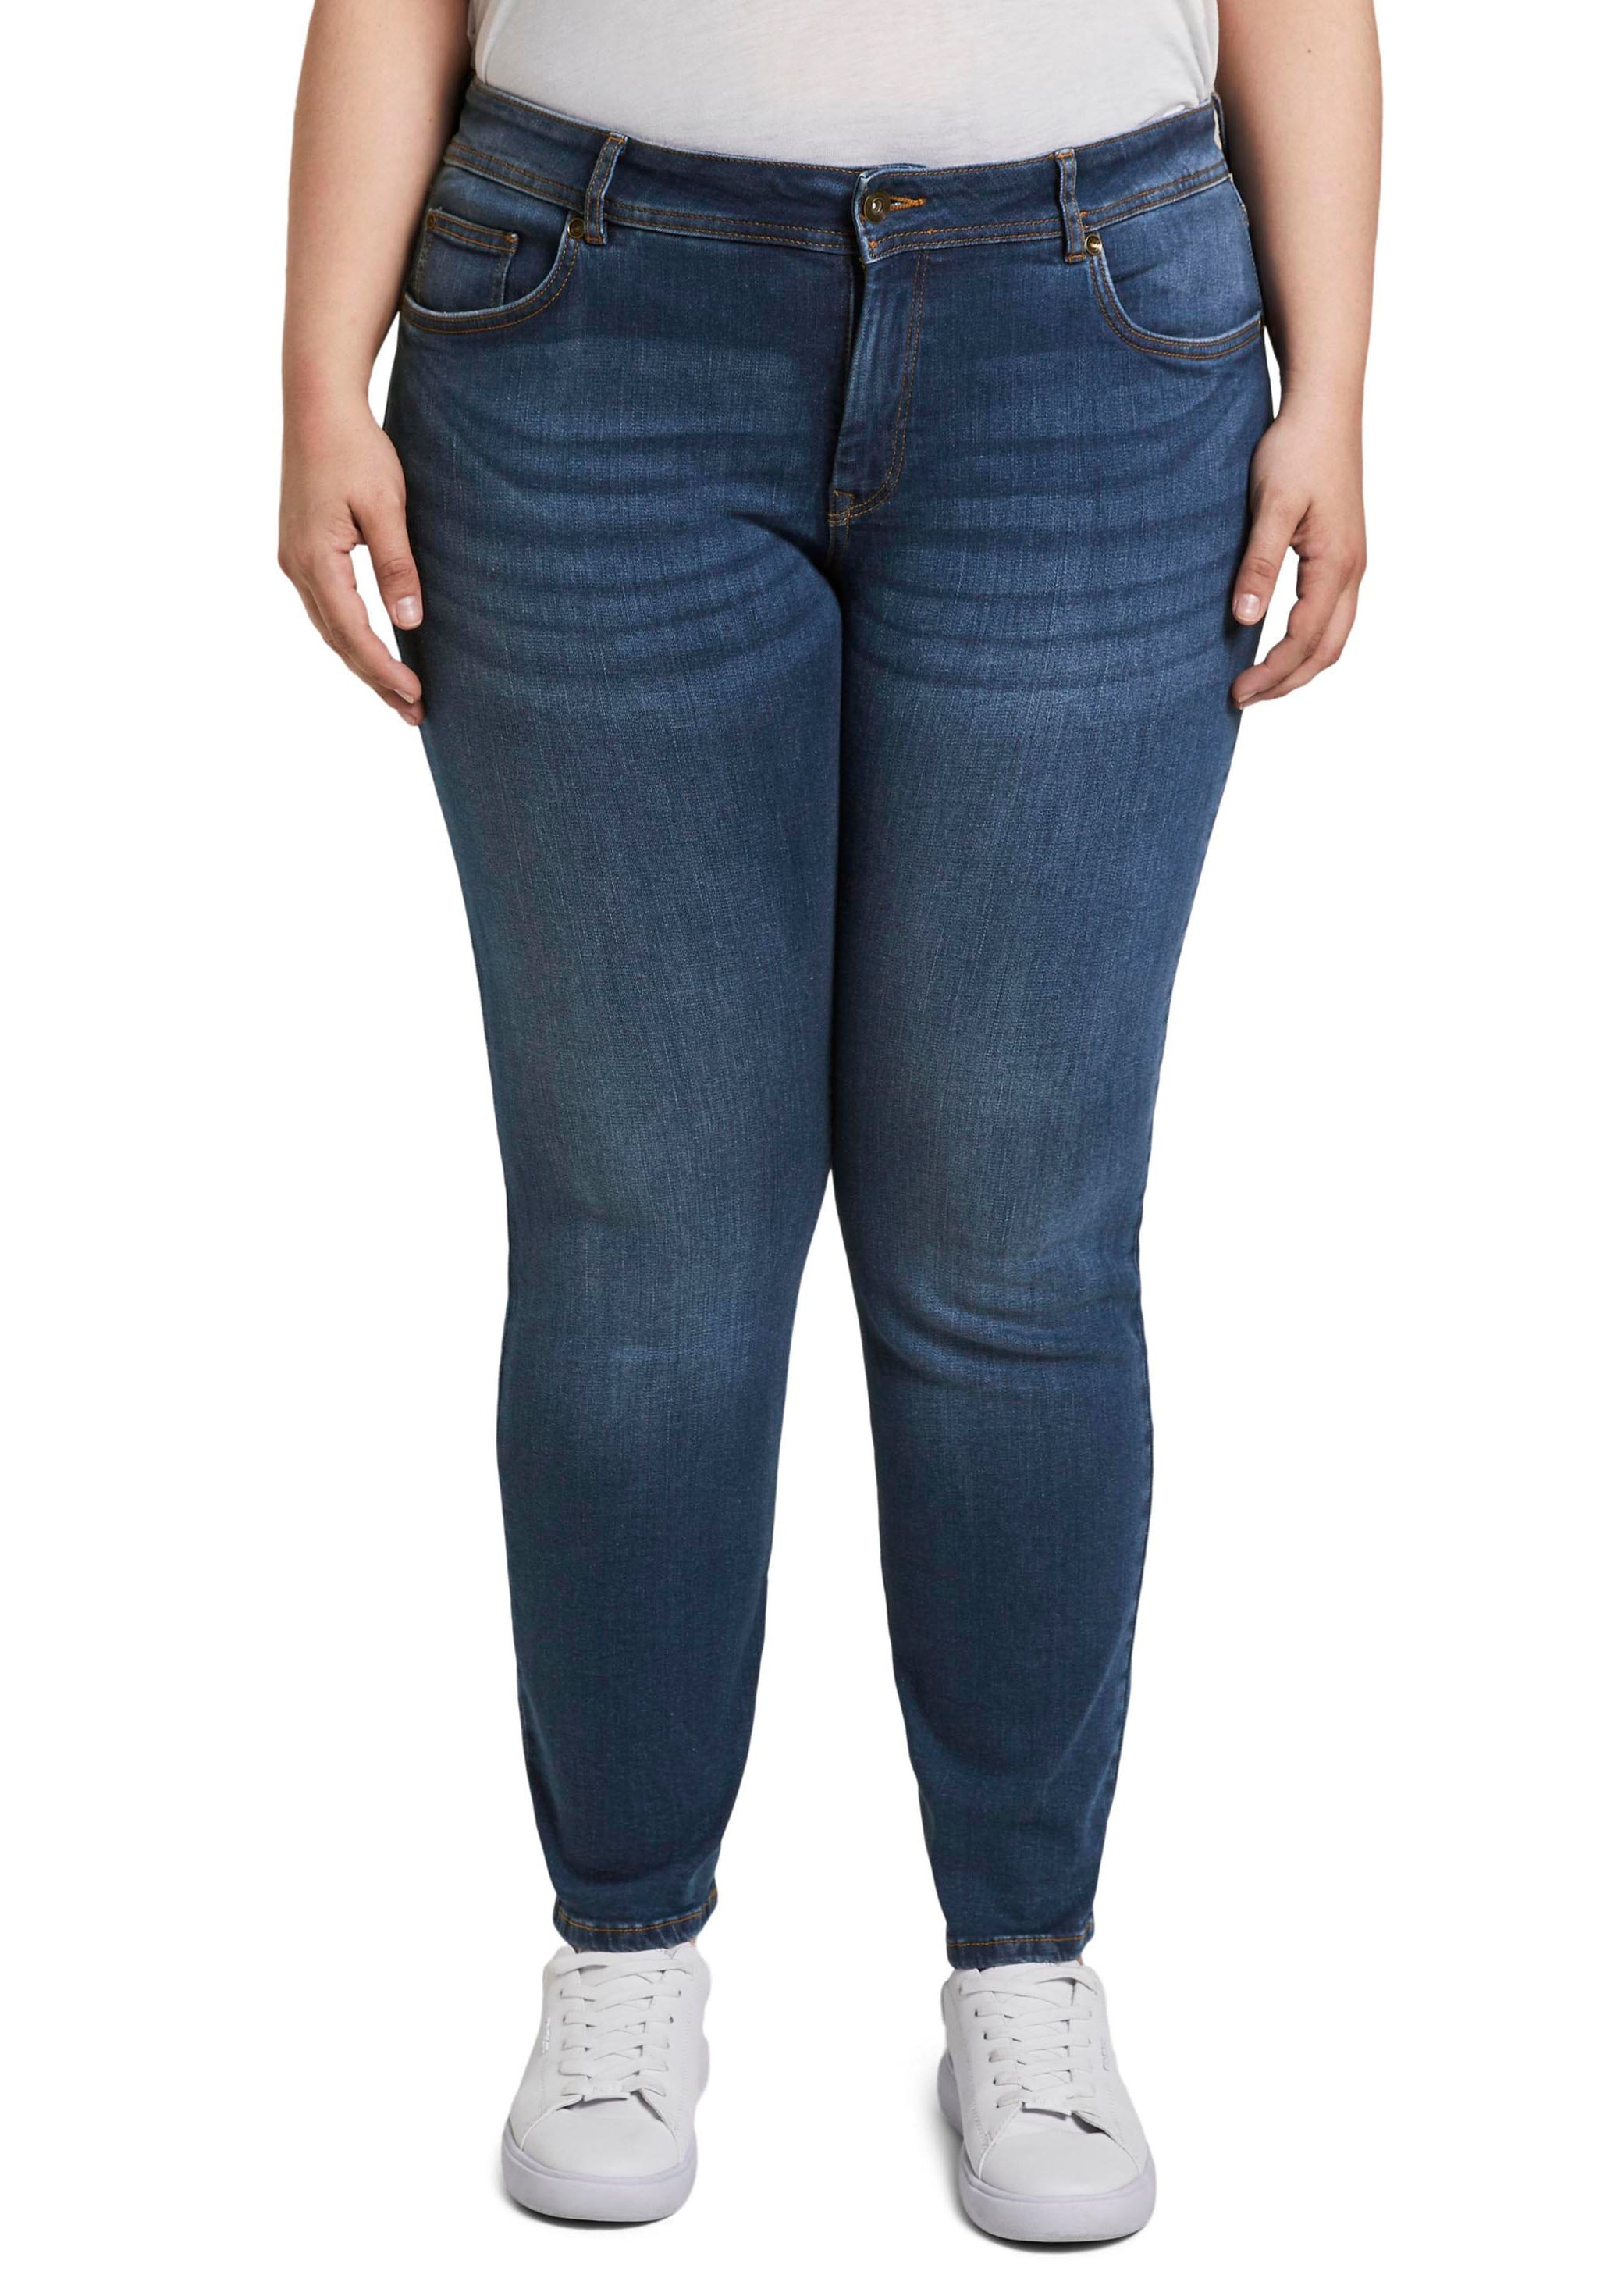 Acheterles ligne Jeans skinny chez tendances en Ackermann.ch - actuelles